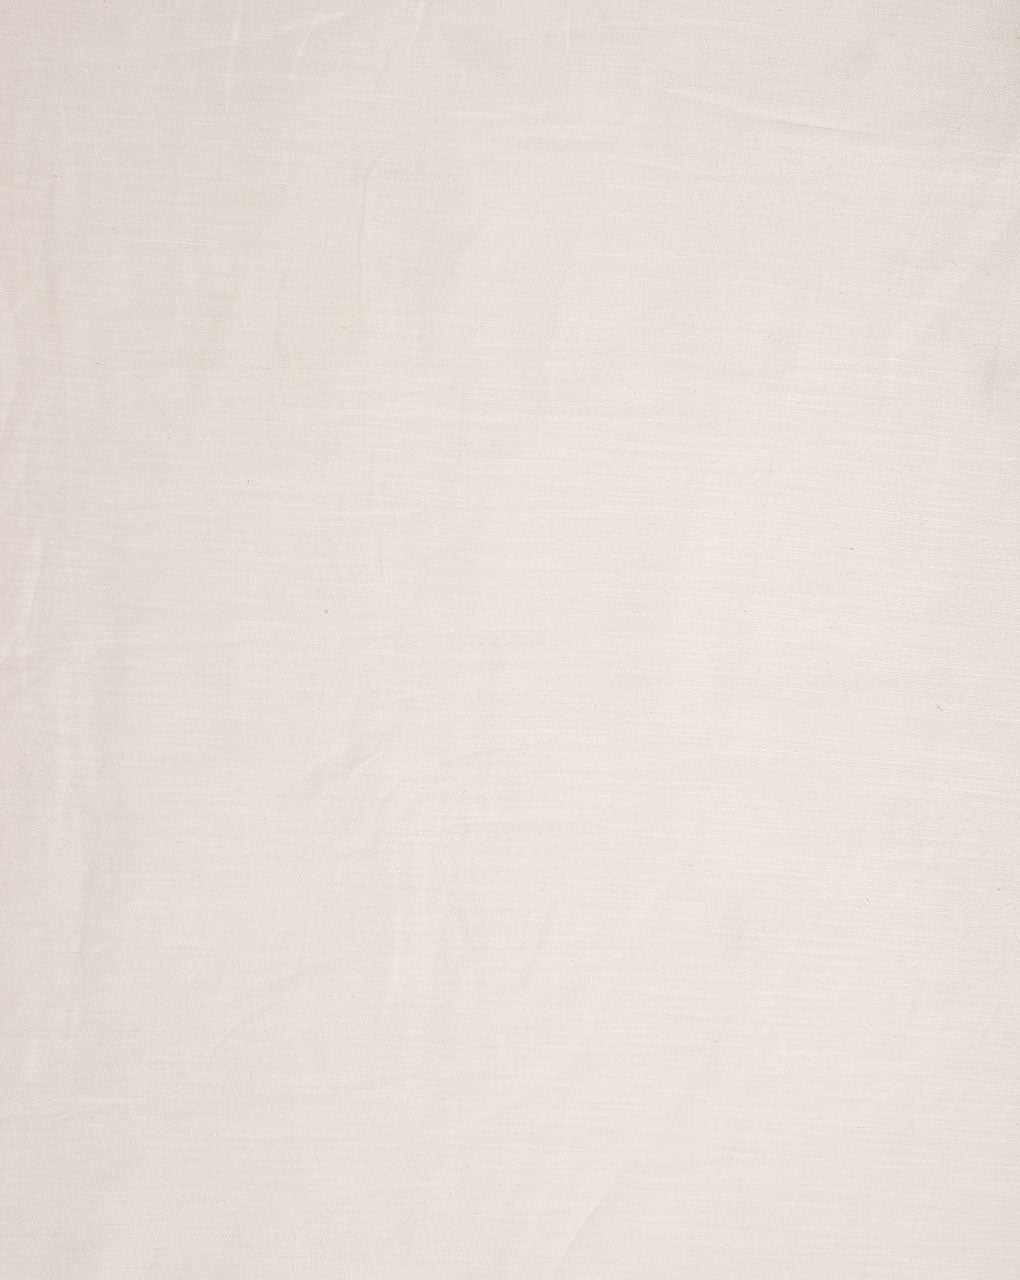 Dyeable Liva Viscose Excel Linen ( Muslin Linen ) Fabric - Fabriclore.com